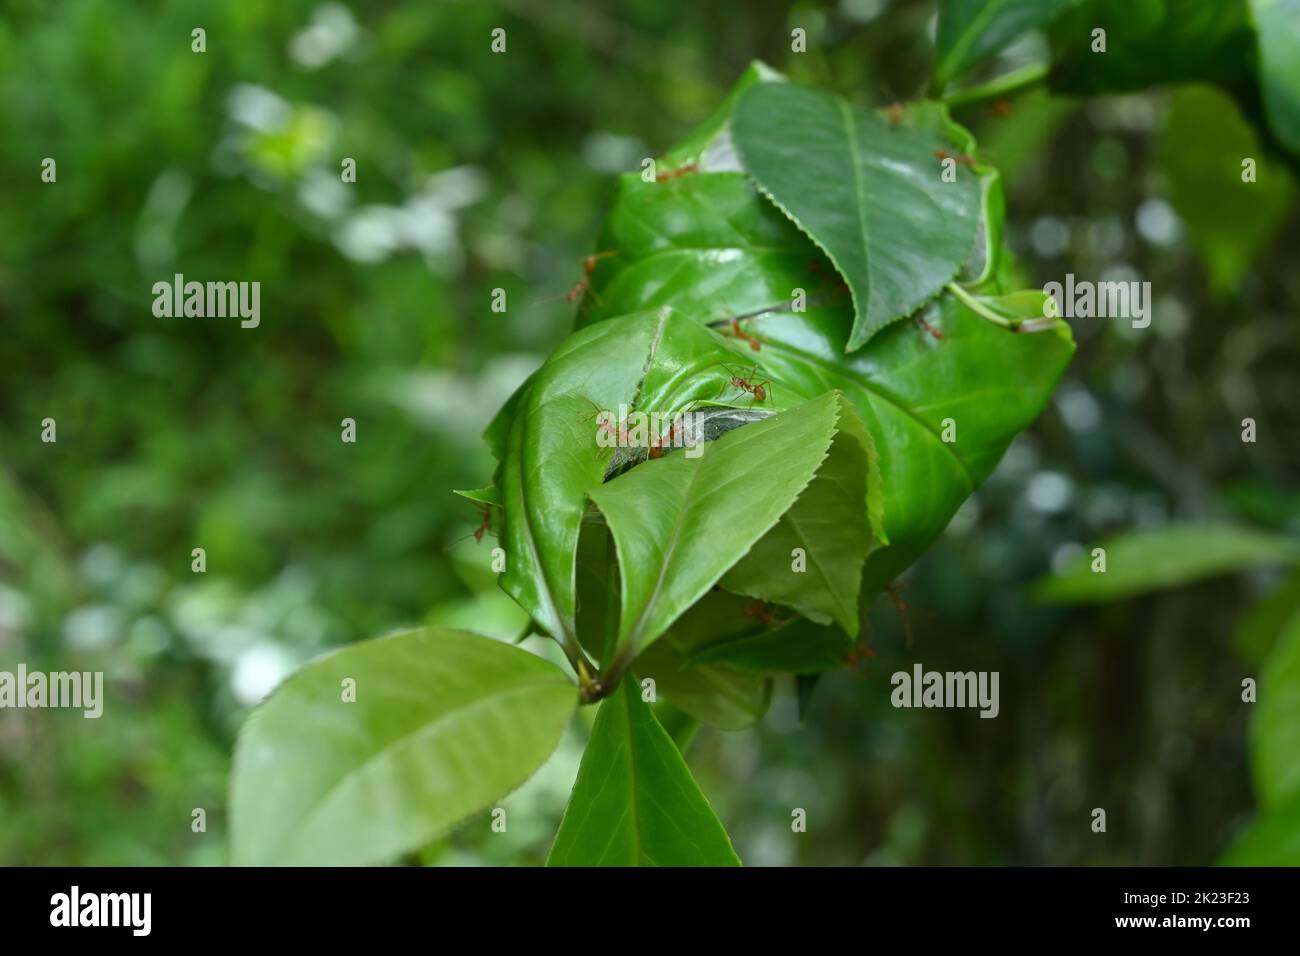 Wenige Weberameisen oder grüne Ameisen starren neugierig auf die Kamera, während sie auf einem Weberameisen-Nest auf einer Symplocos cochinchinensis-Pflanze sitzen. Stockfoto